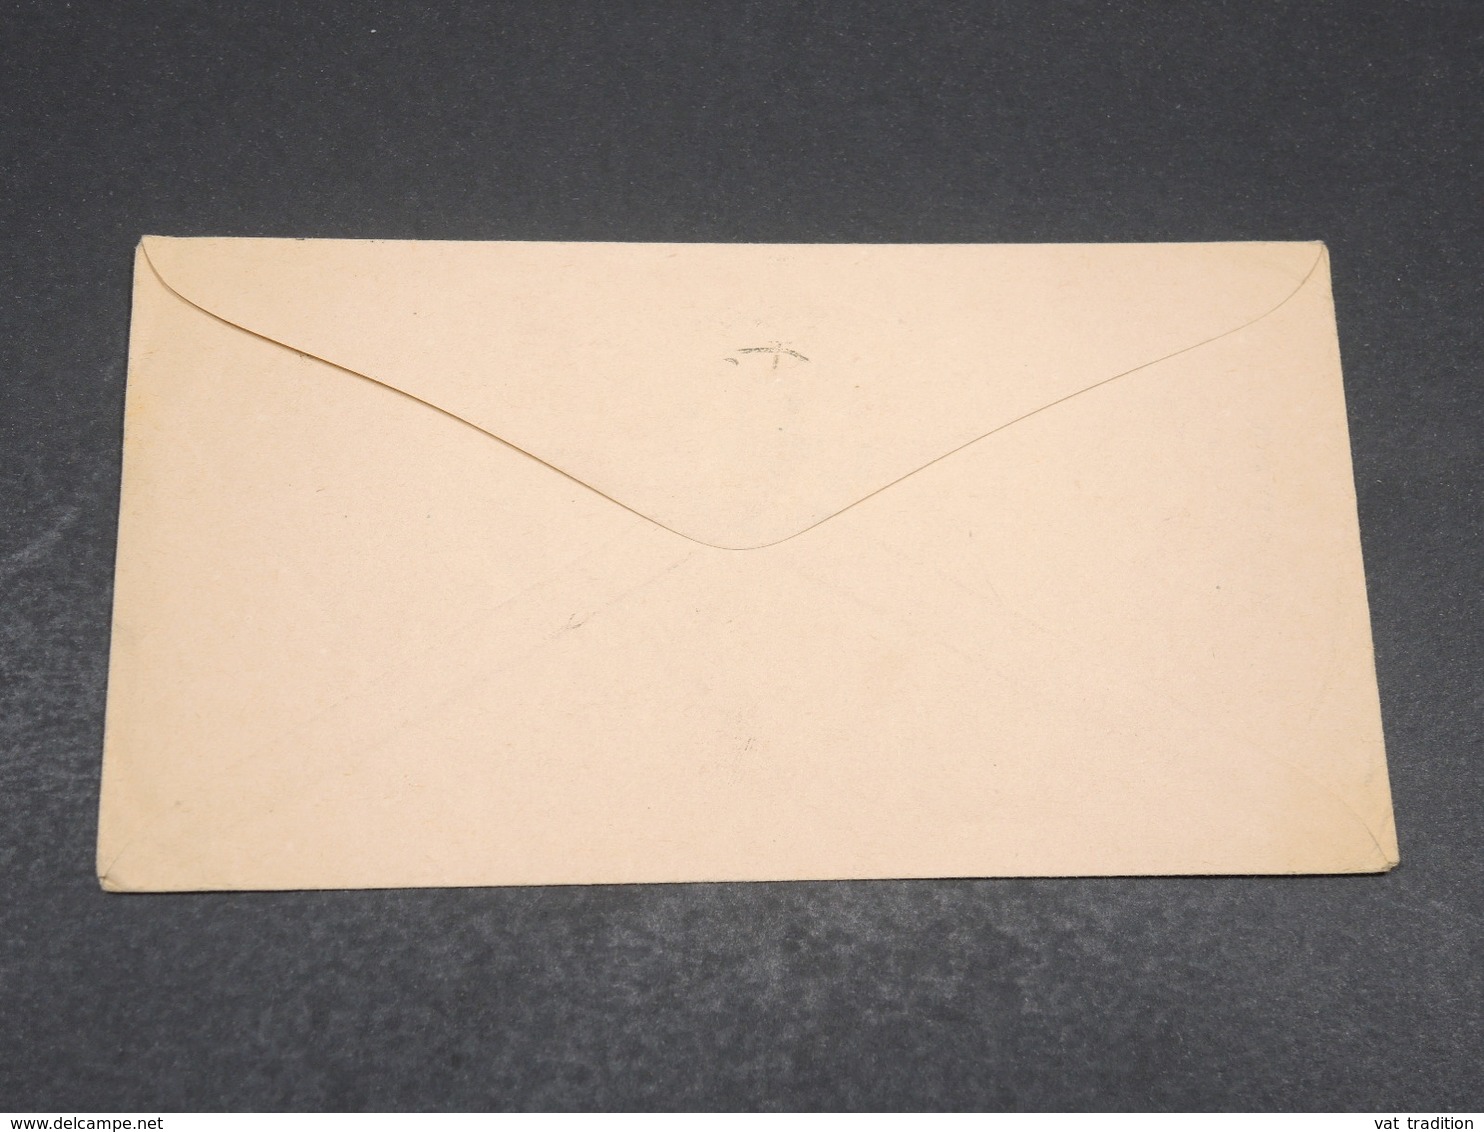 ETATS UNIS - Entier Postal Commercial De New York Pour L 'Italie En 1894 - L 17681 - ...-1900